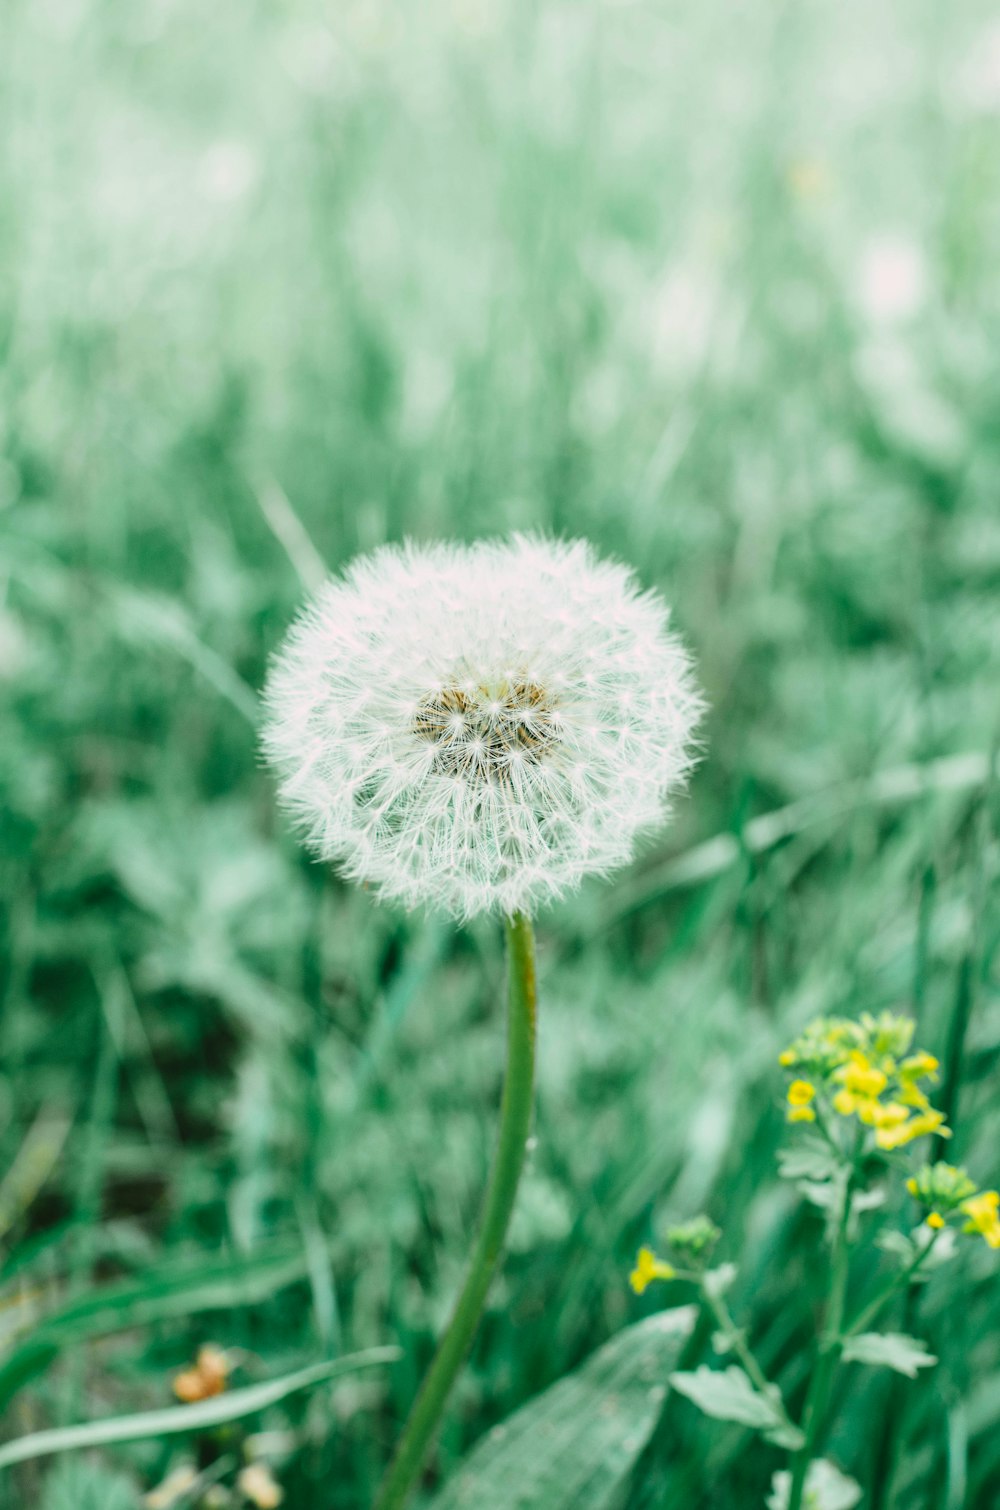 a dandelion in a field of green grass